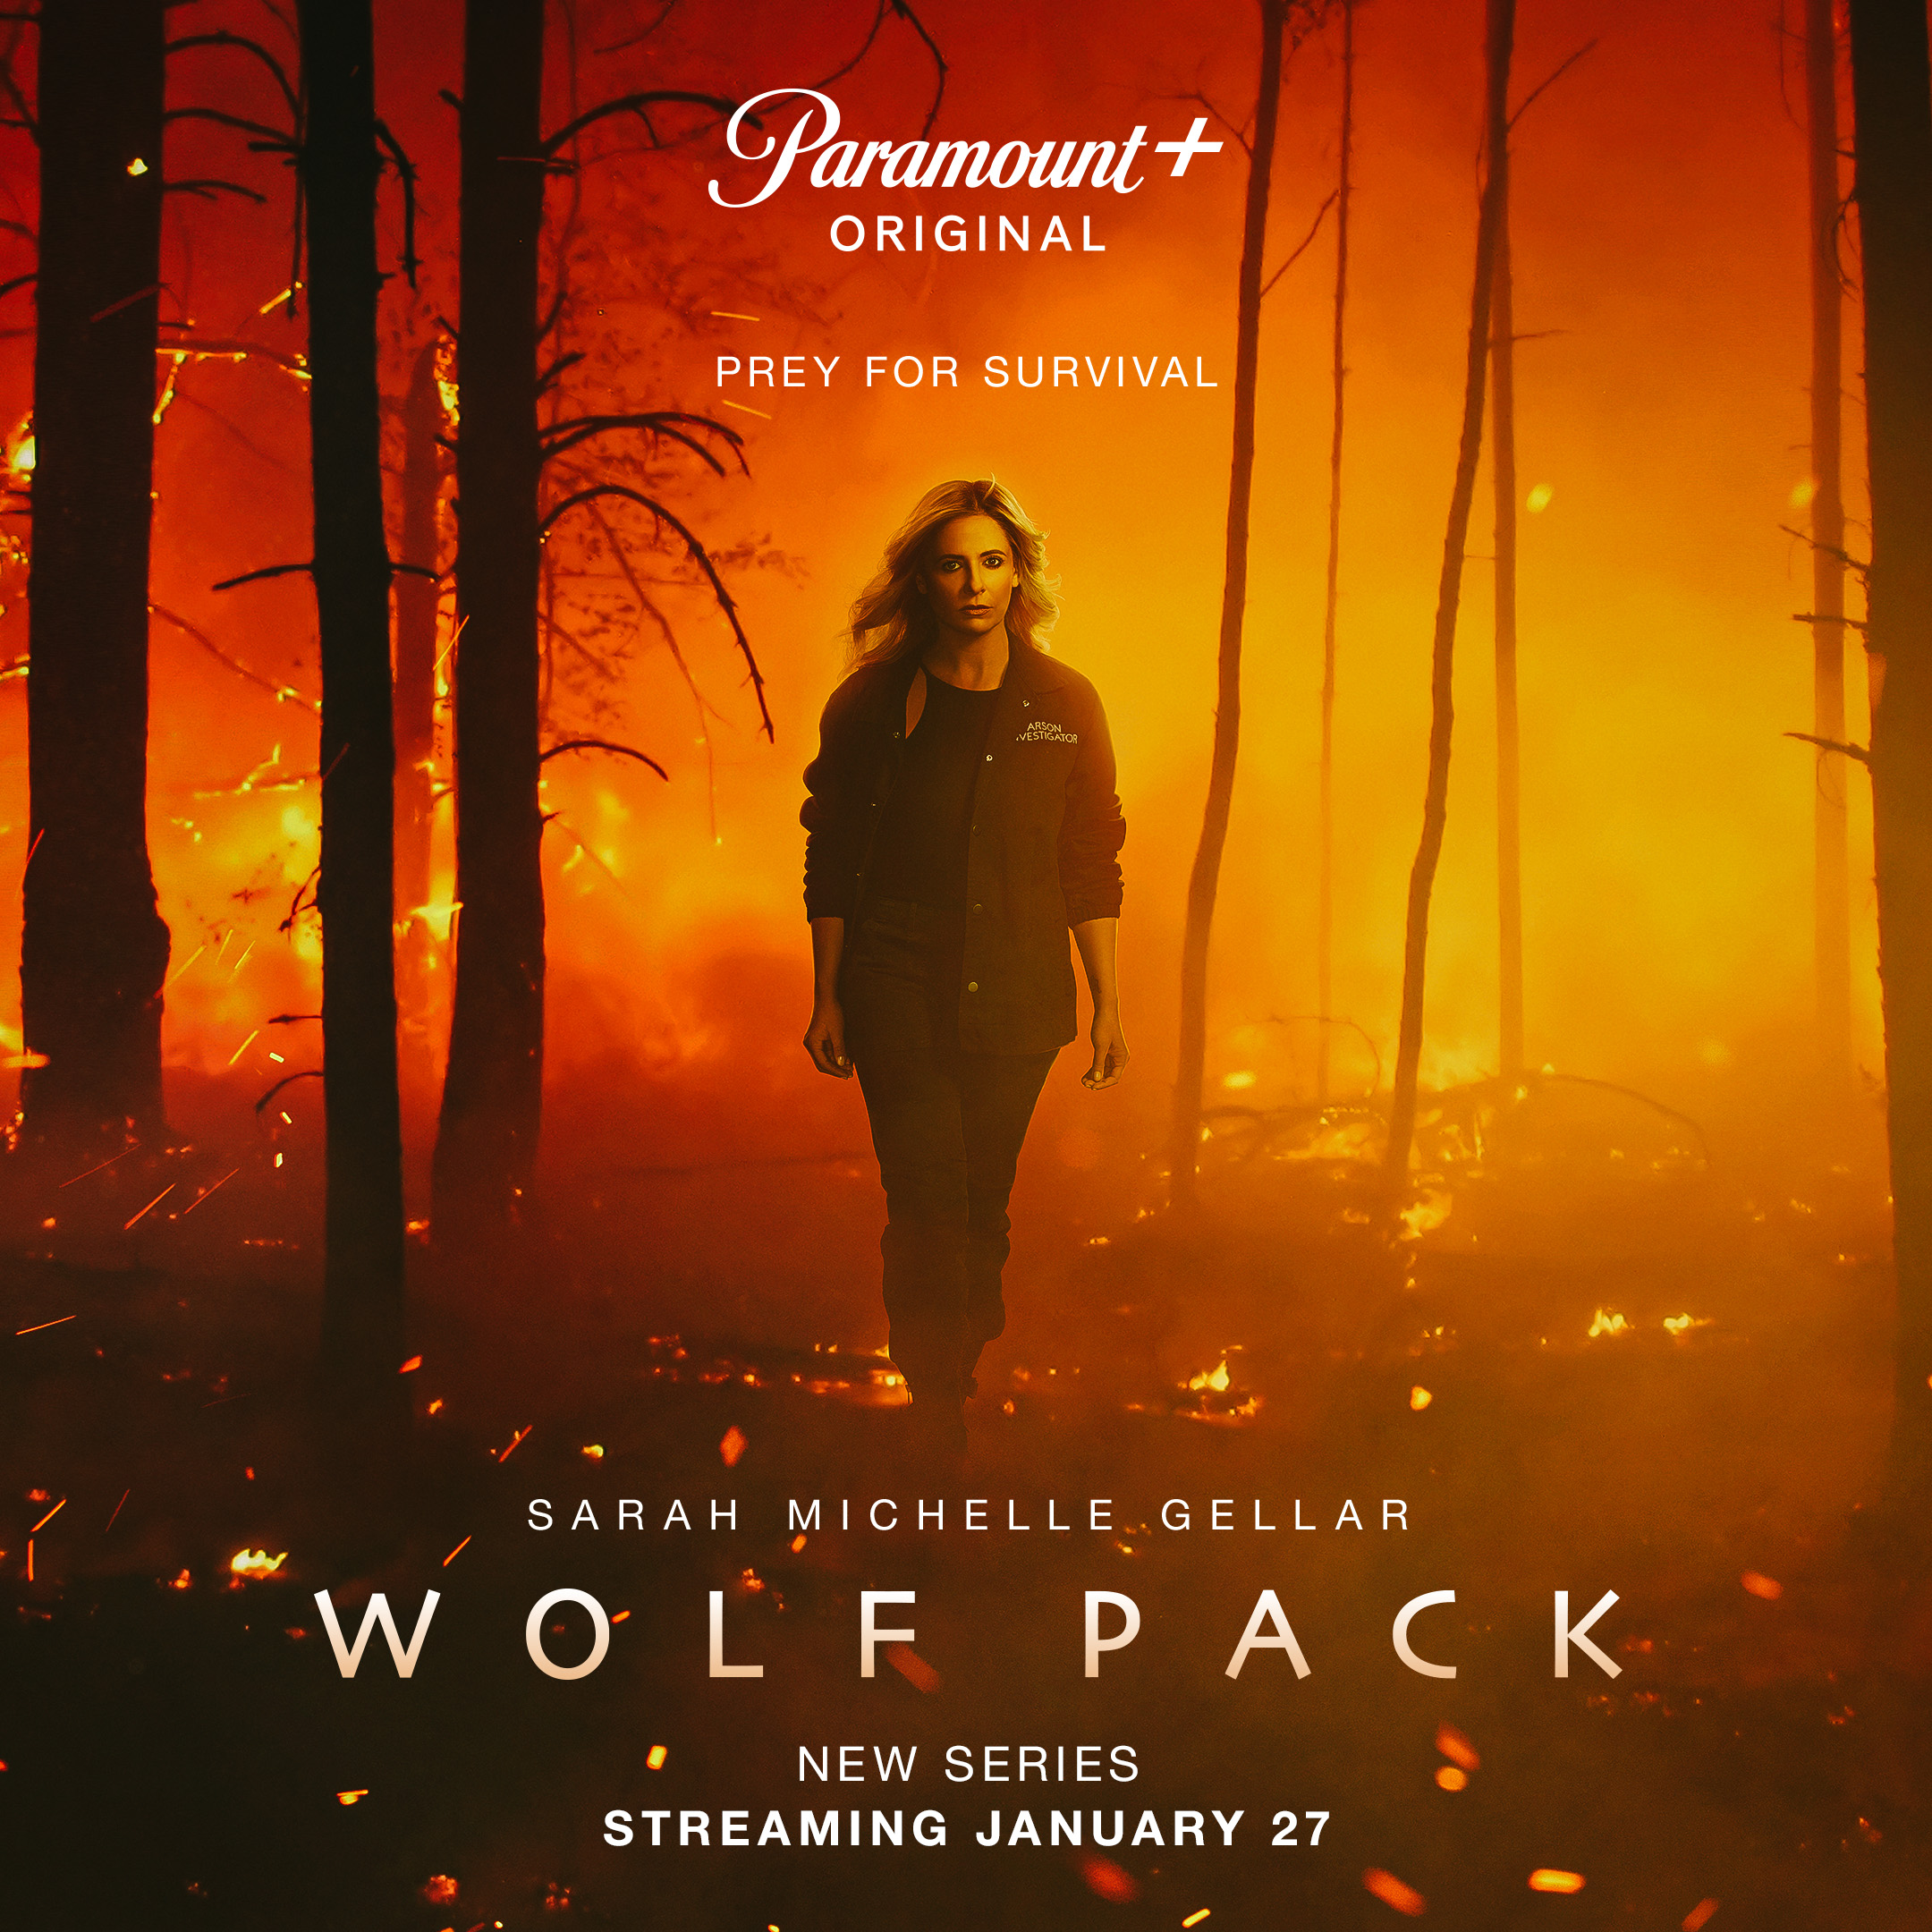 Wolf Pack Trailer: Sarah Michelle Gellar investigates strange attacks in new horror series